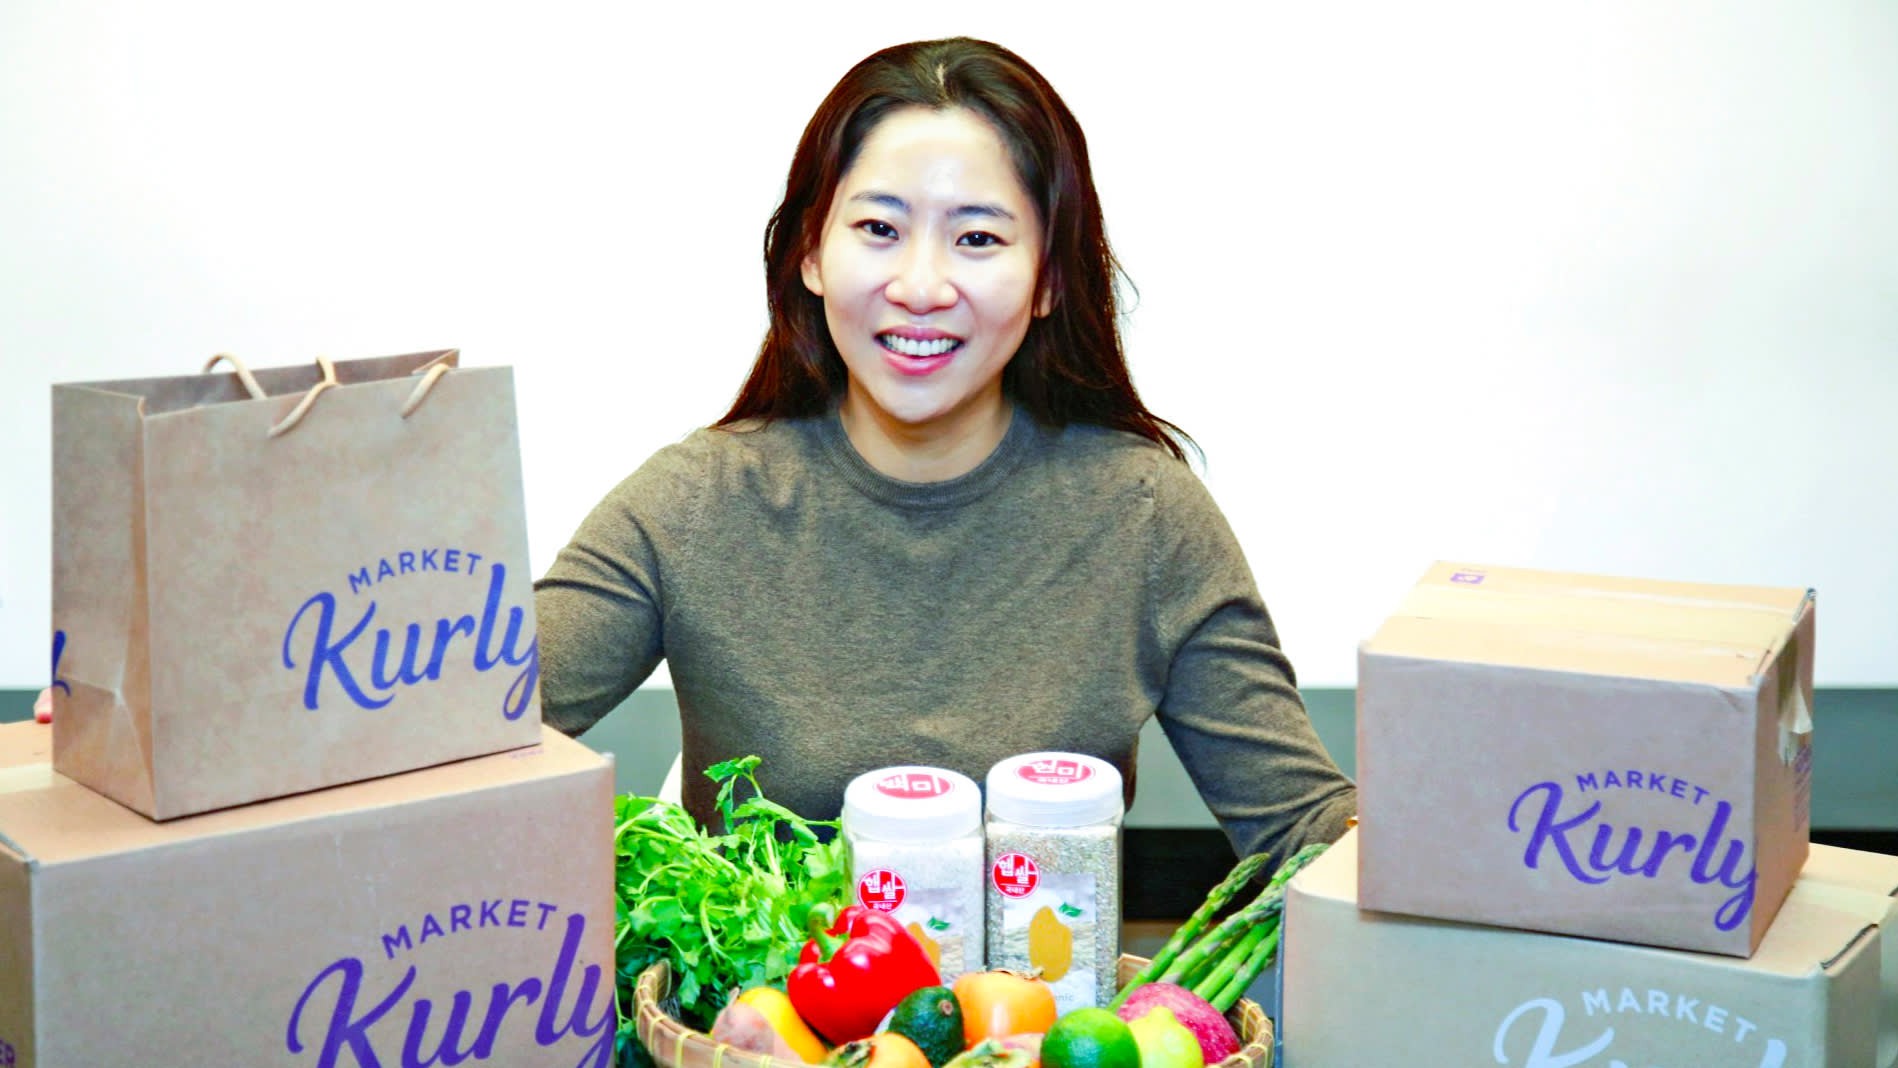 

Ở quê hương, Sophie Kim đã có thể thoải mái mua sắm những thực phẩm mà cô mong muốn
